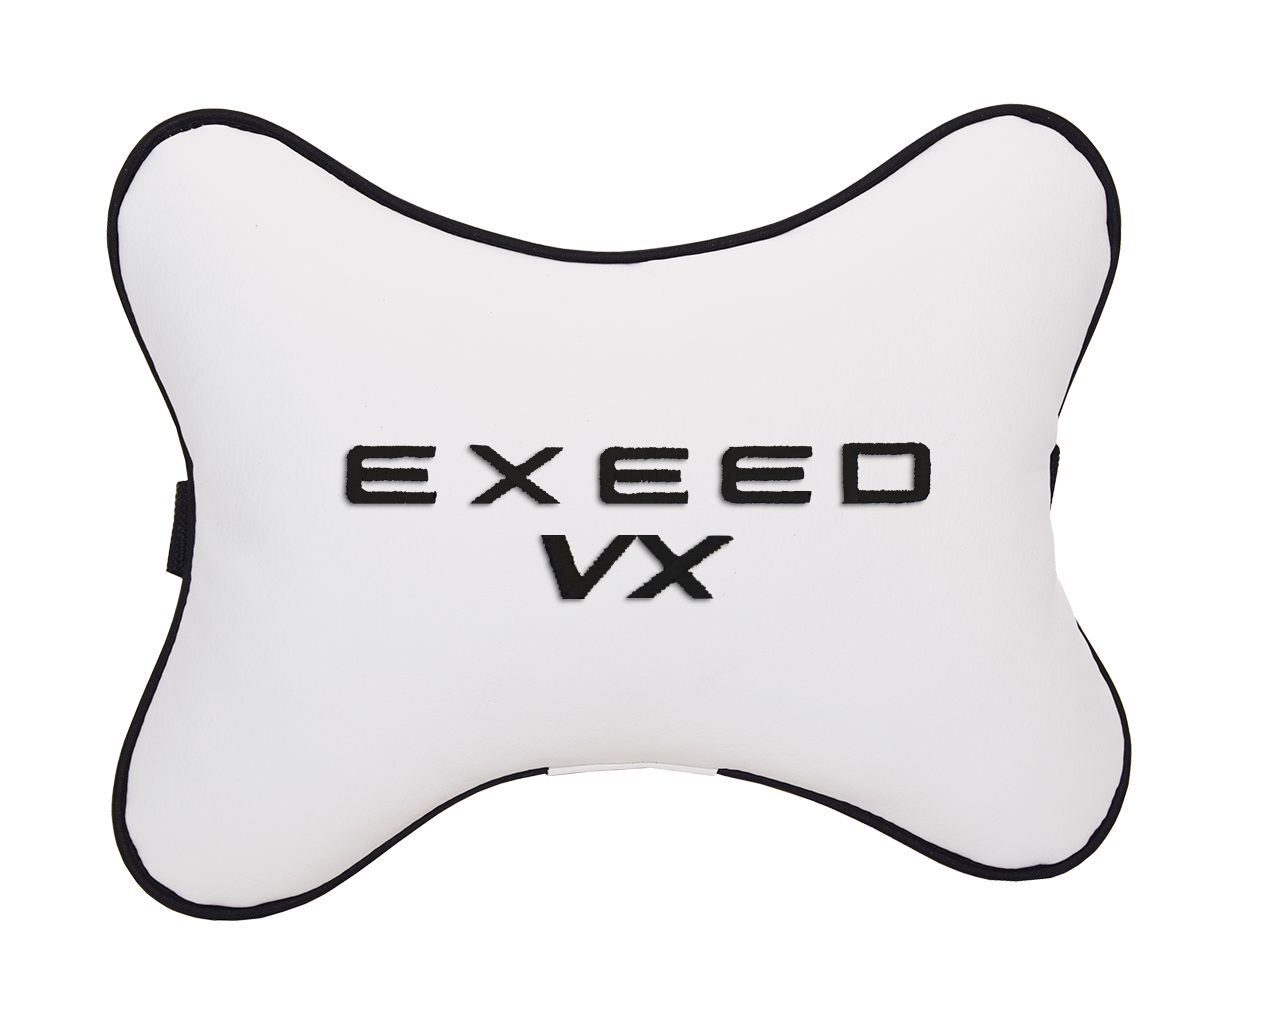 Подушка на подголовник экокожа Milk с логотипом автомобиля EXEED VX